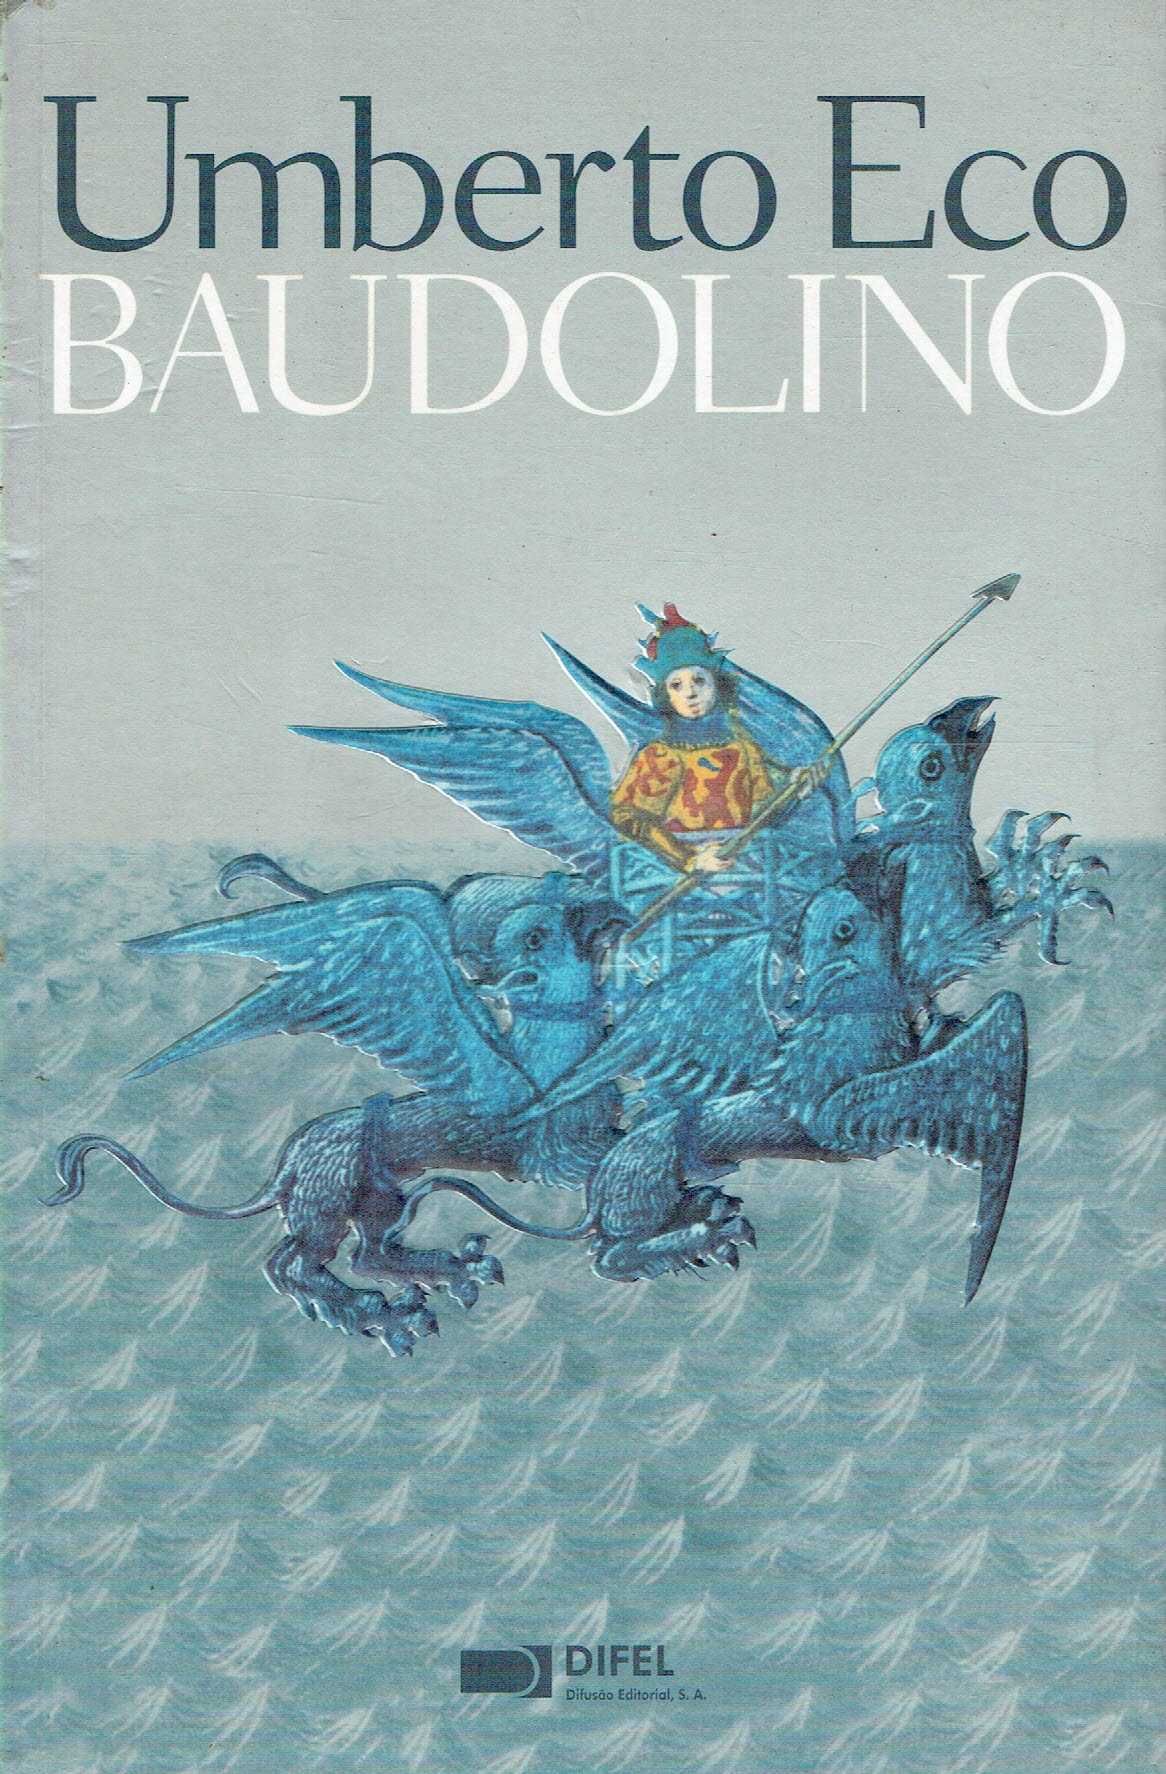 6749

Baudolino
de Umberto Eco